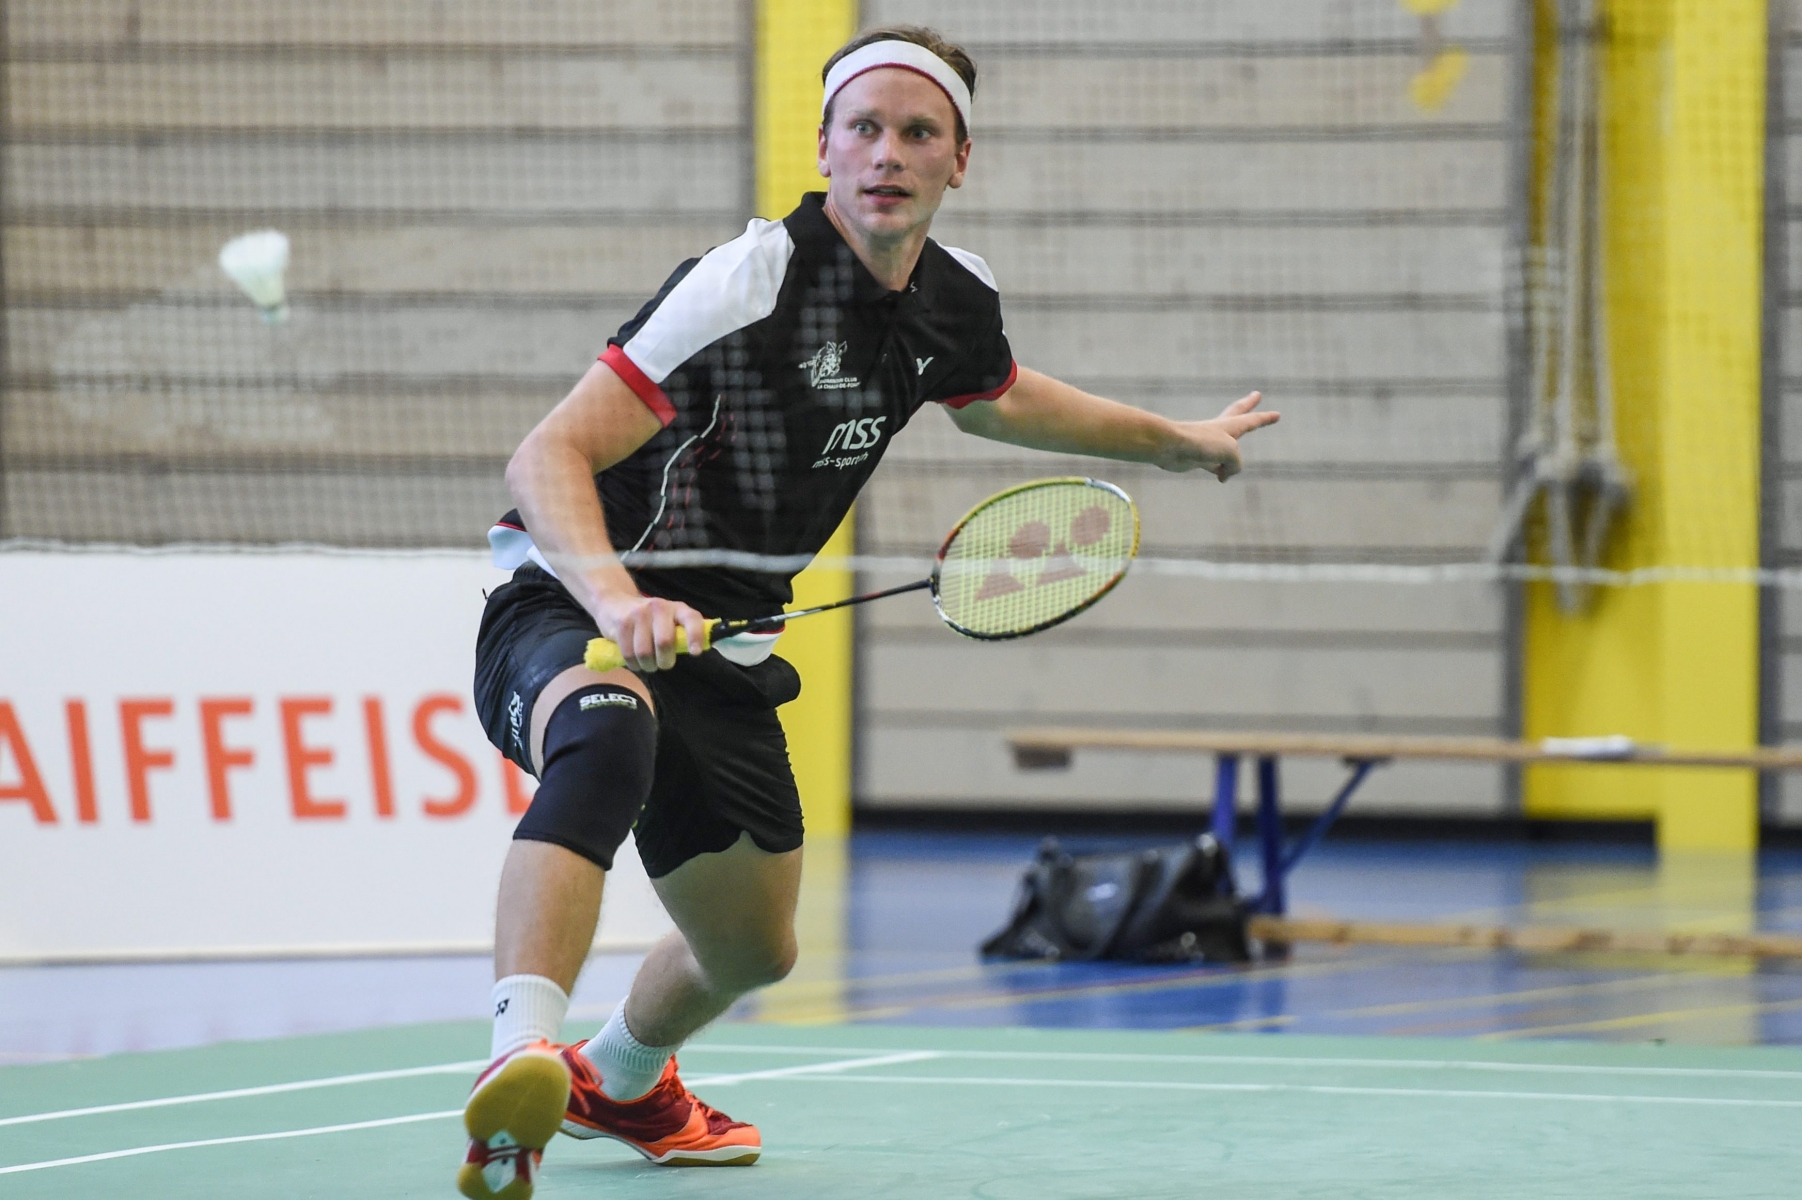 Badminton. La Chaux-de-Fonds - Uzwil
Marius Myhre

LA CHAUX-DE-FONDS 24/09/2016
Photo: Christian Galley BADMINTON